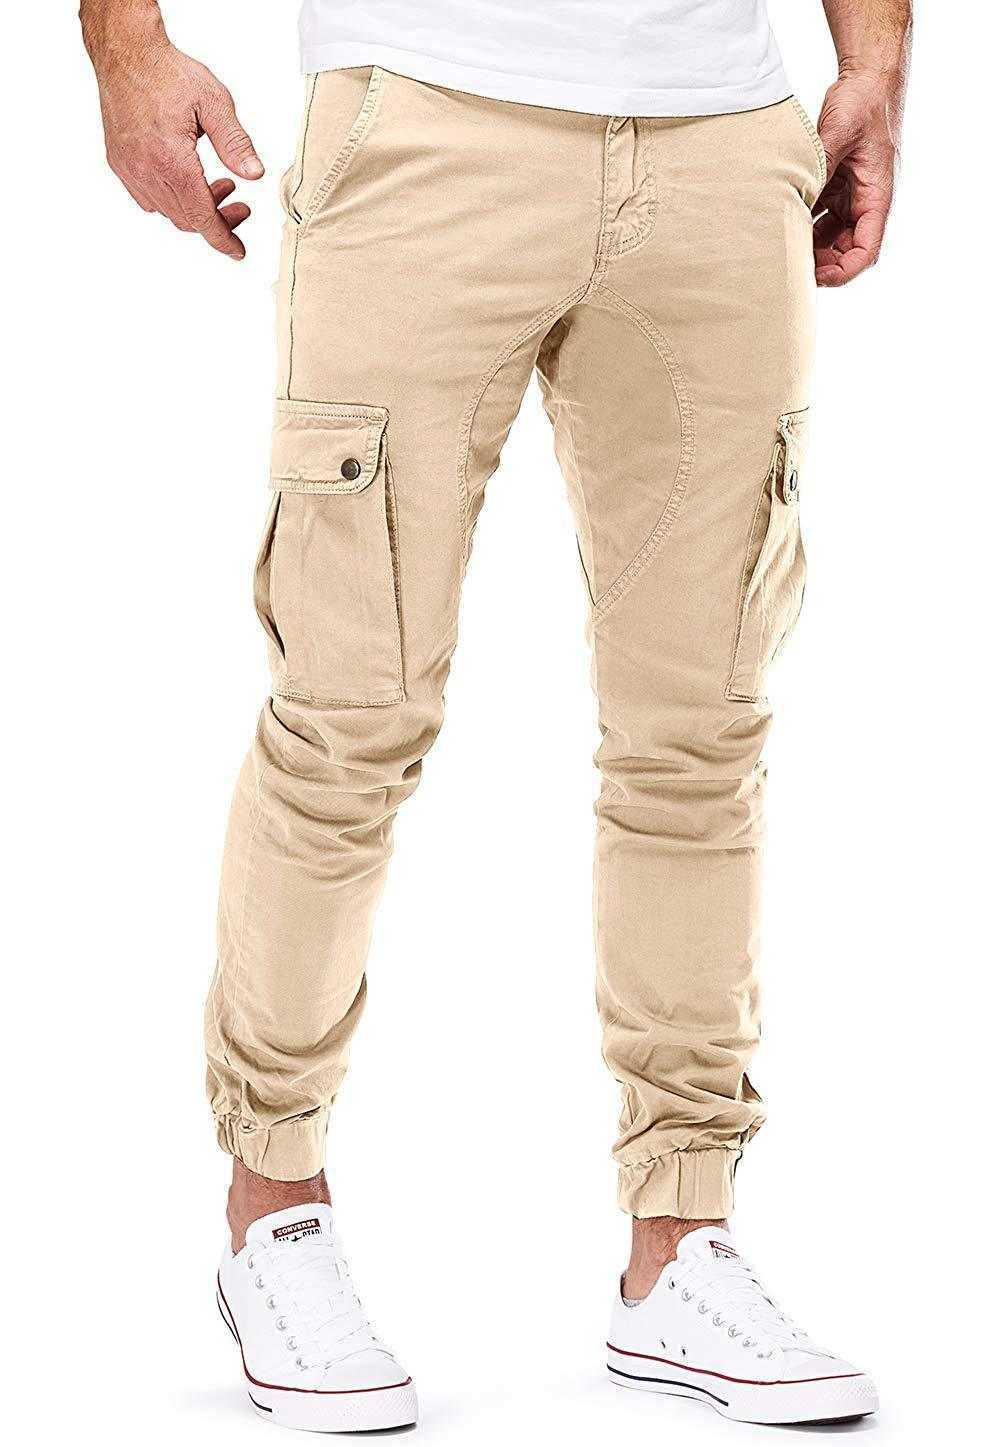 Men's Pants 2022 hommes Streetwear Cargo pantalon mode pantalons de survêtement Joggers pantalon décontracté homme couleur unie coton pantalon hommes marque pantalon de survêtement W0325